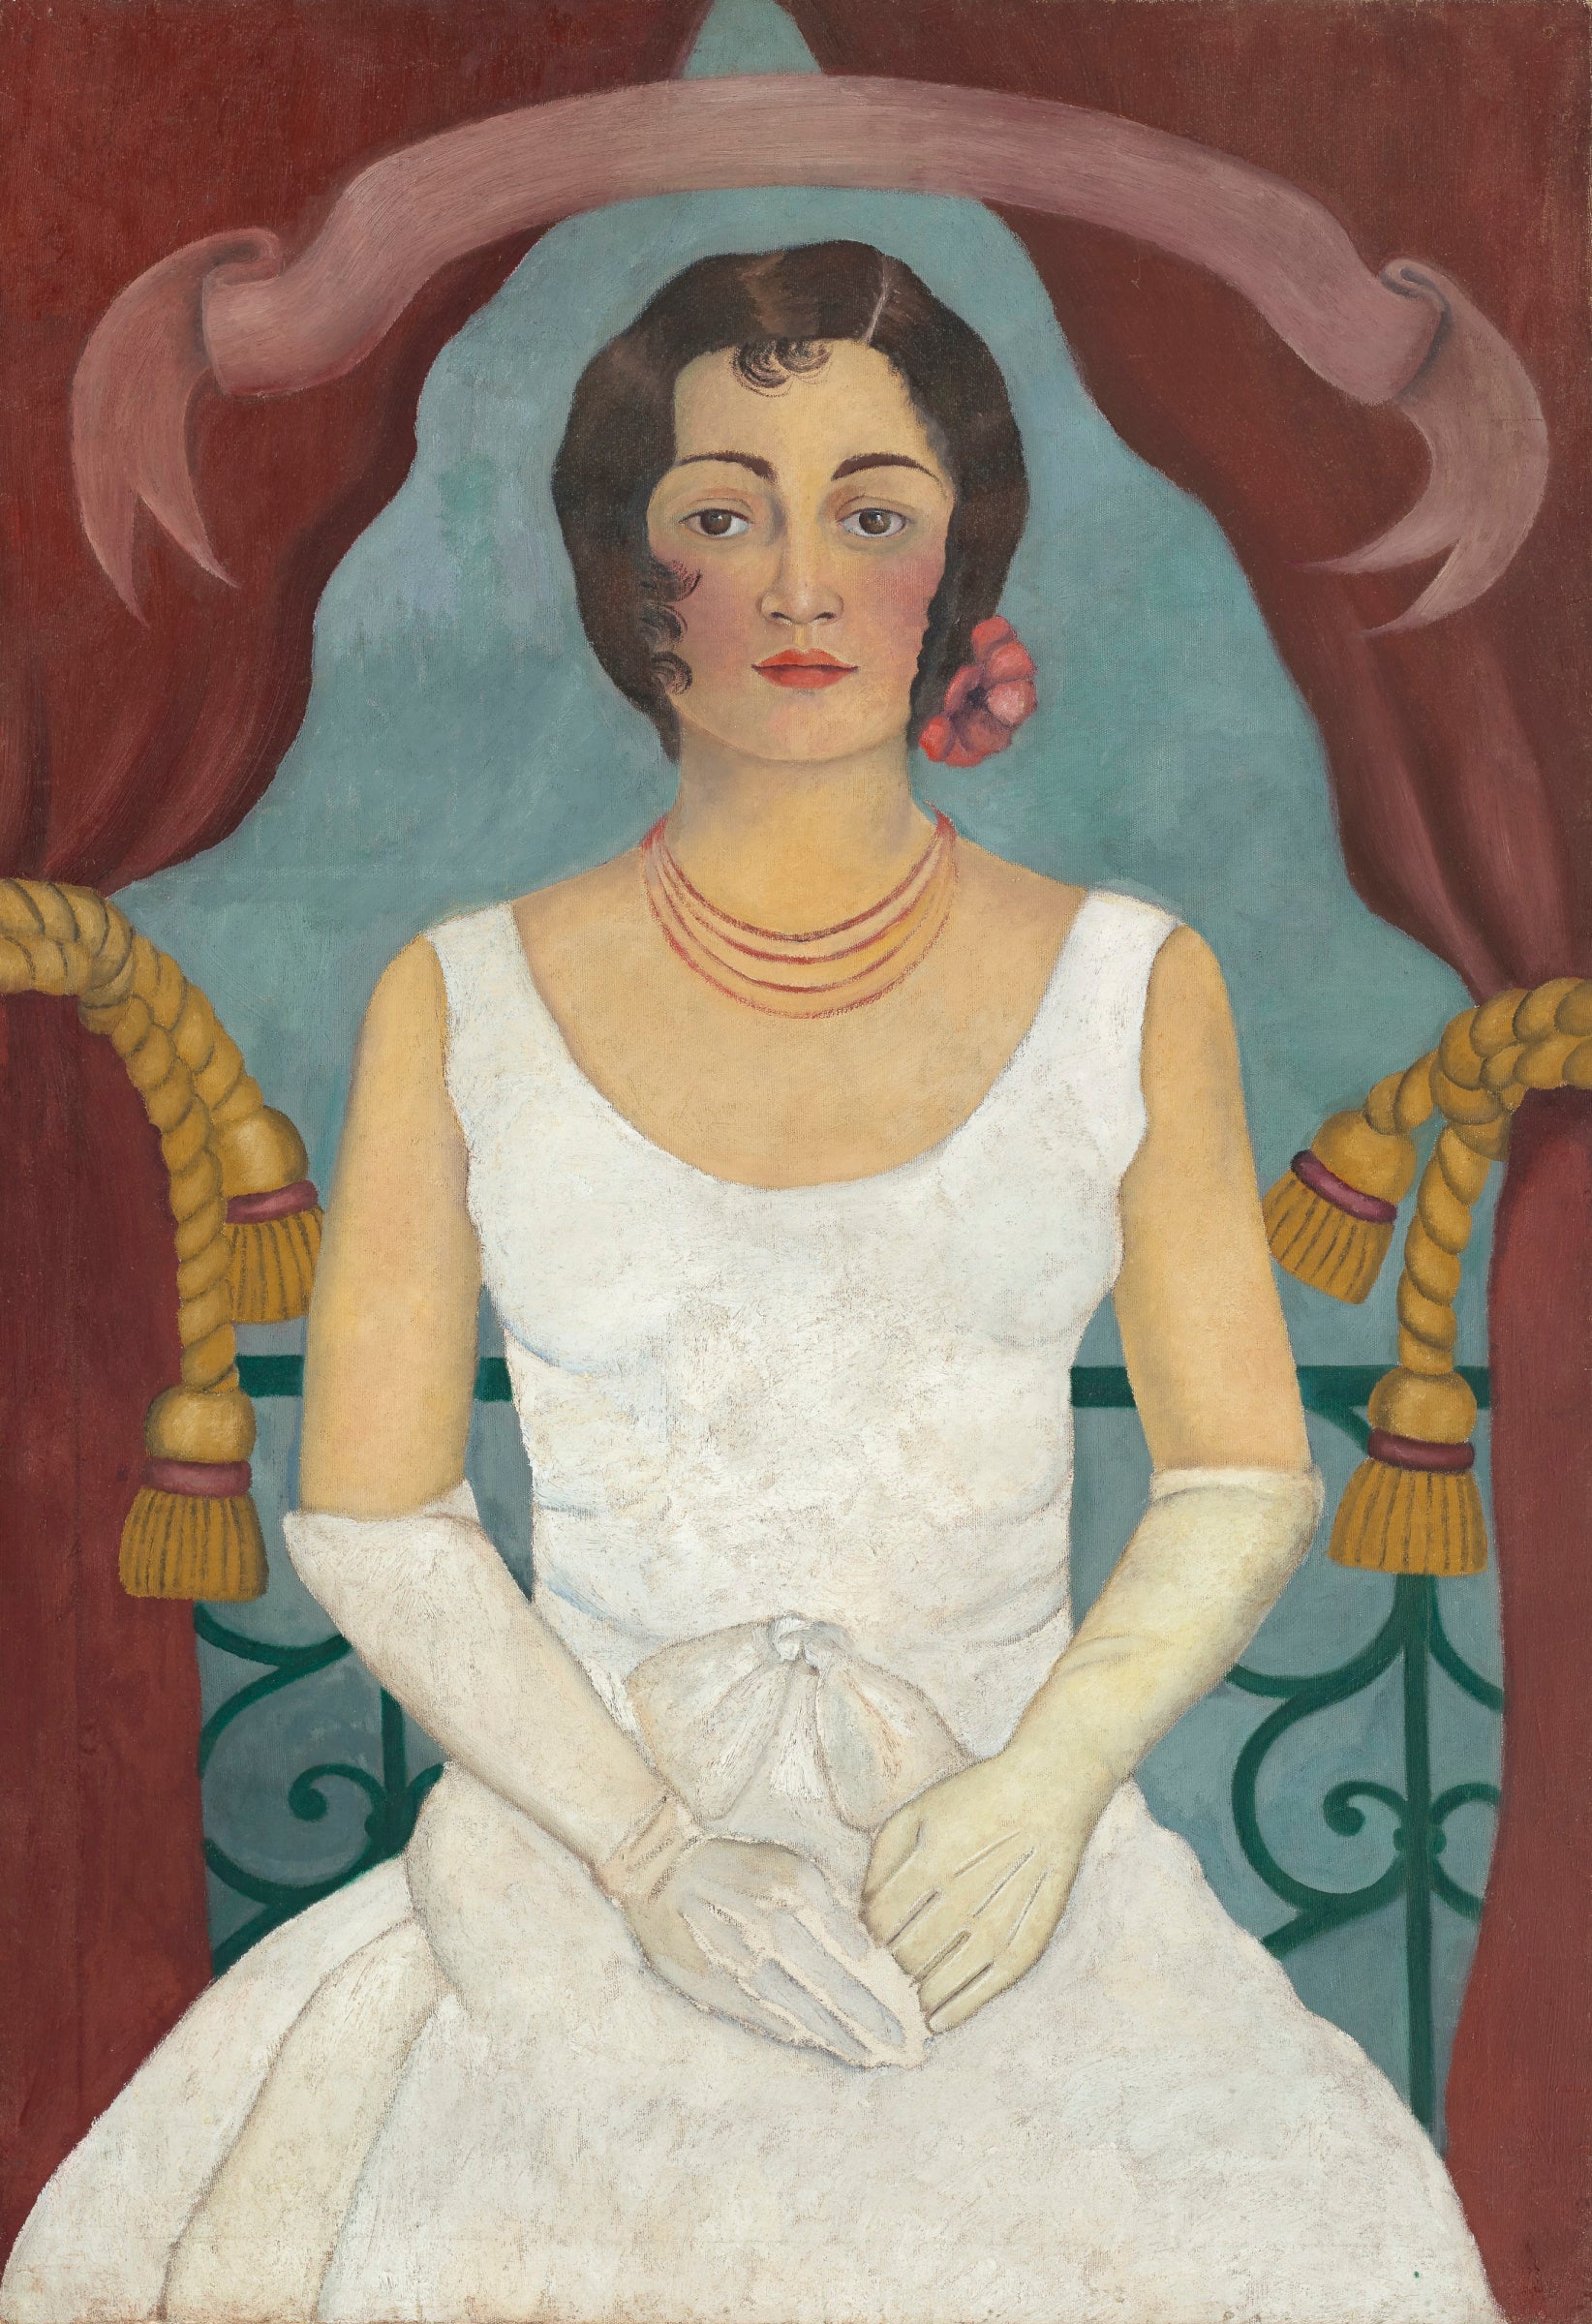 Retrato de uma mulher vestida de branco